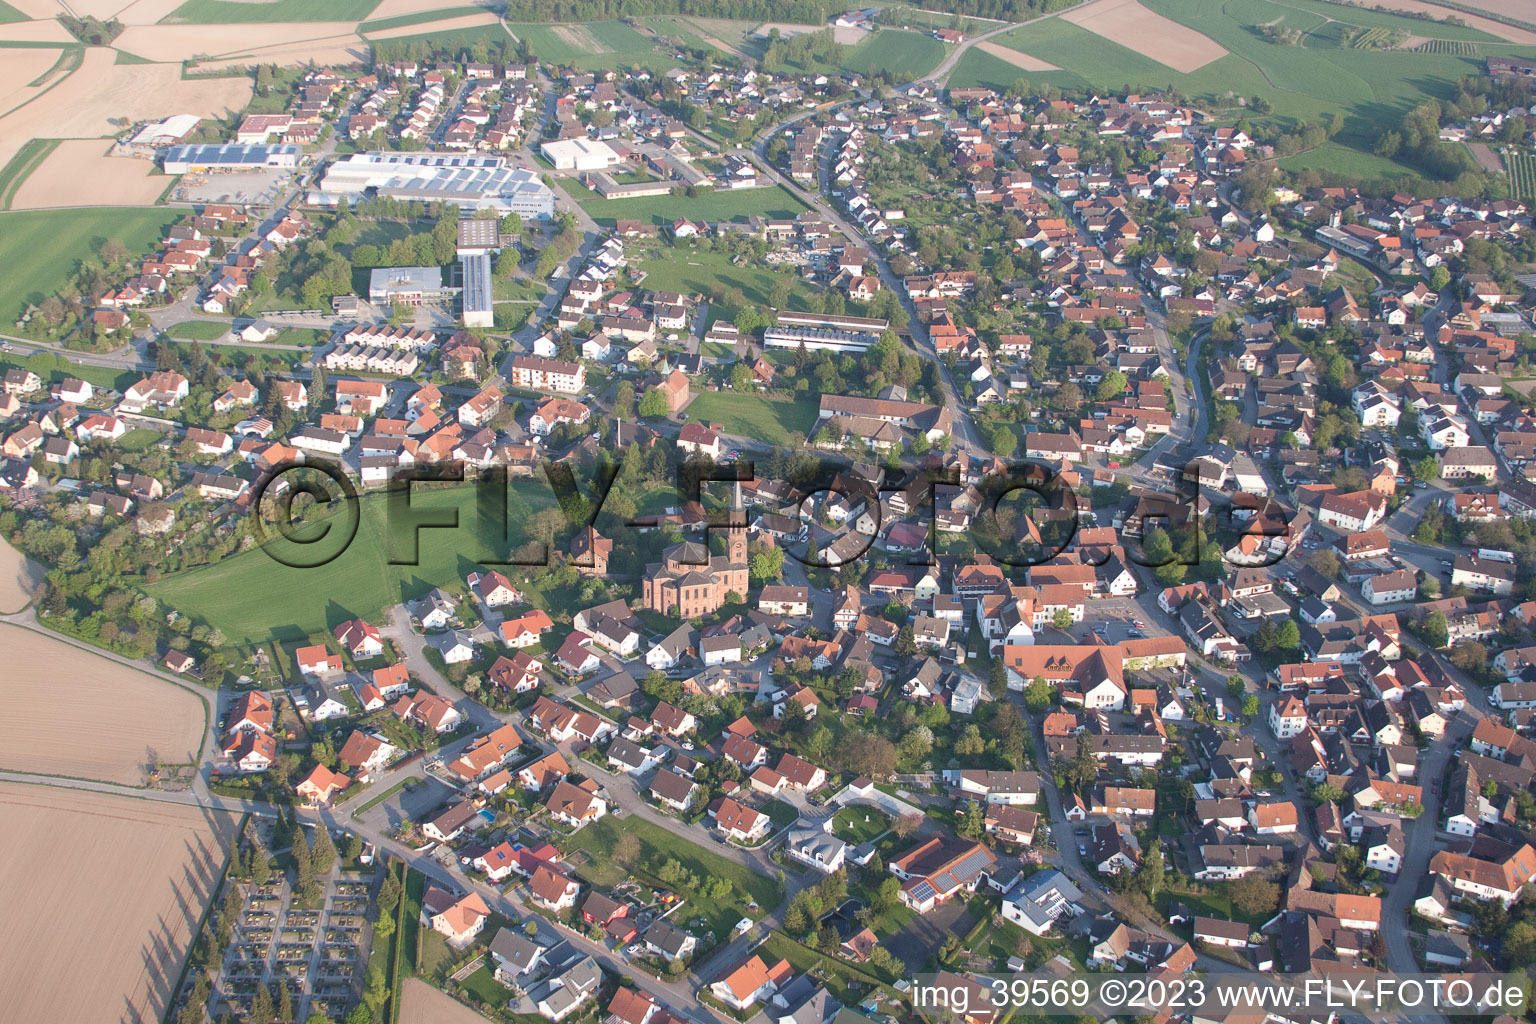 Luftbild von Ortsteil Rheinbischofsheim in Rheinau im Bundesland Baden-Württemberg, Deutschland